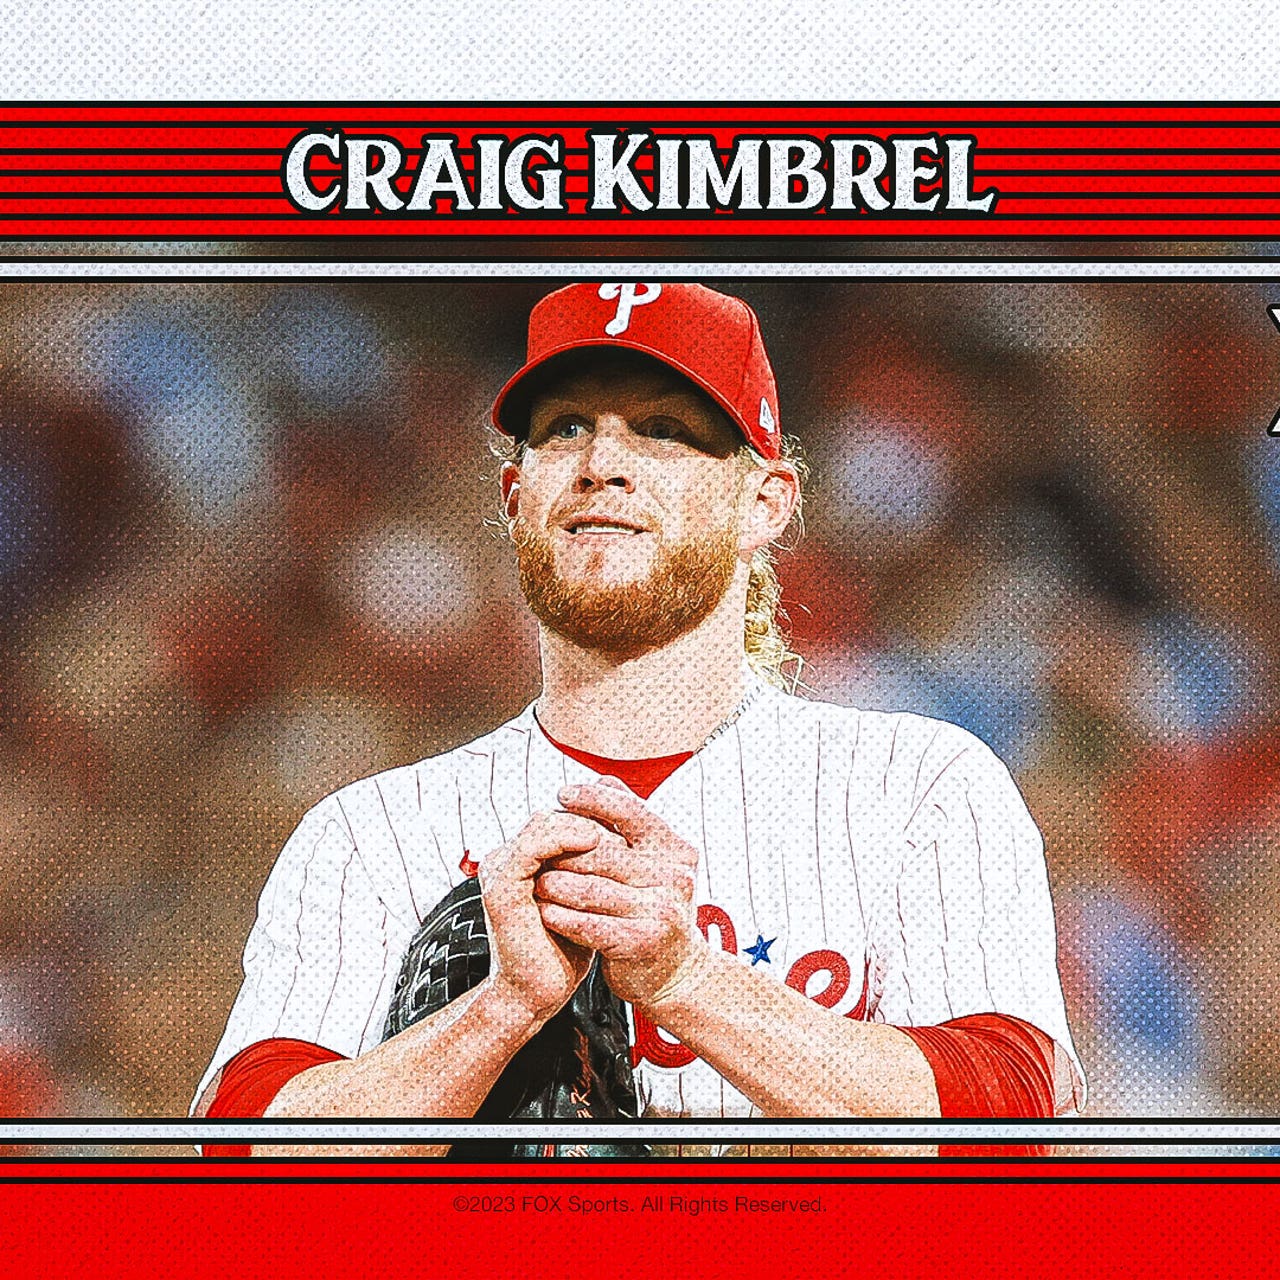 Understanding the greatness of Craig Kimbrel